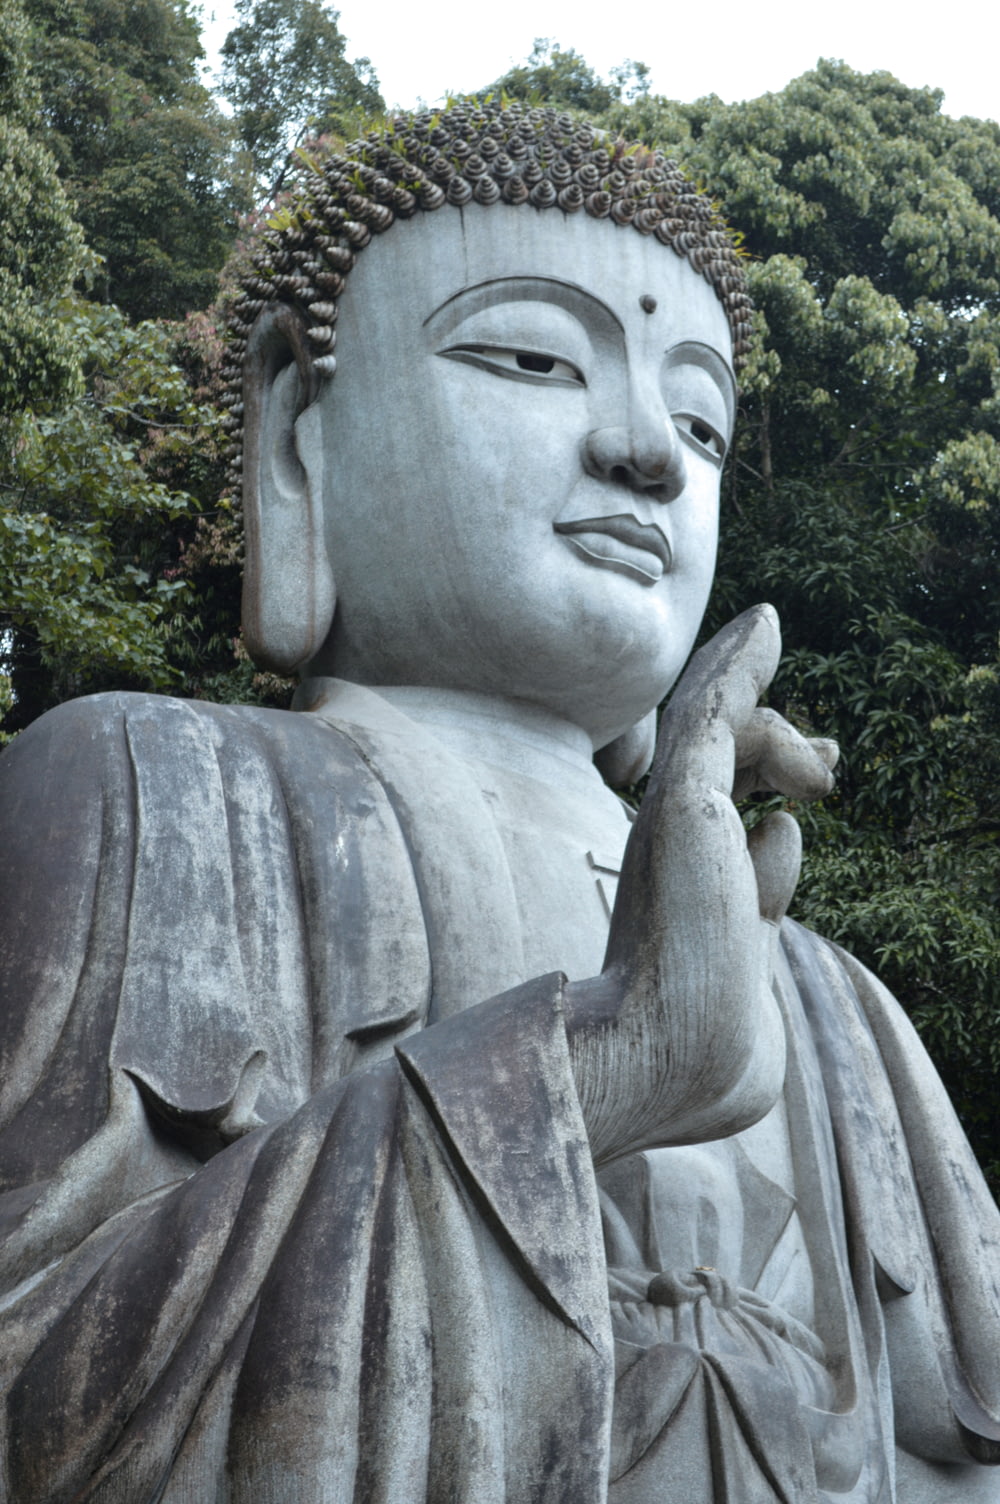 a statue of a buddha holding a bird